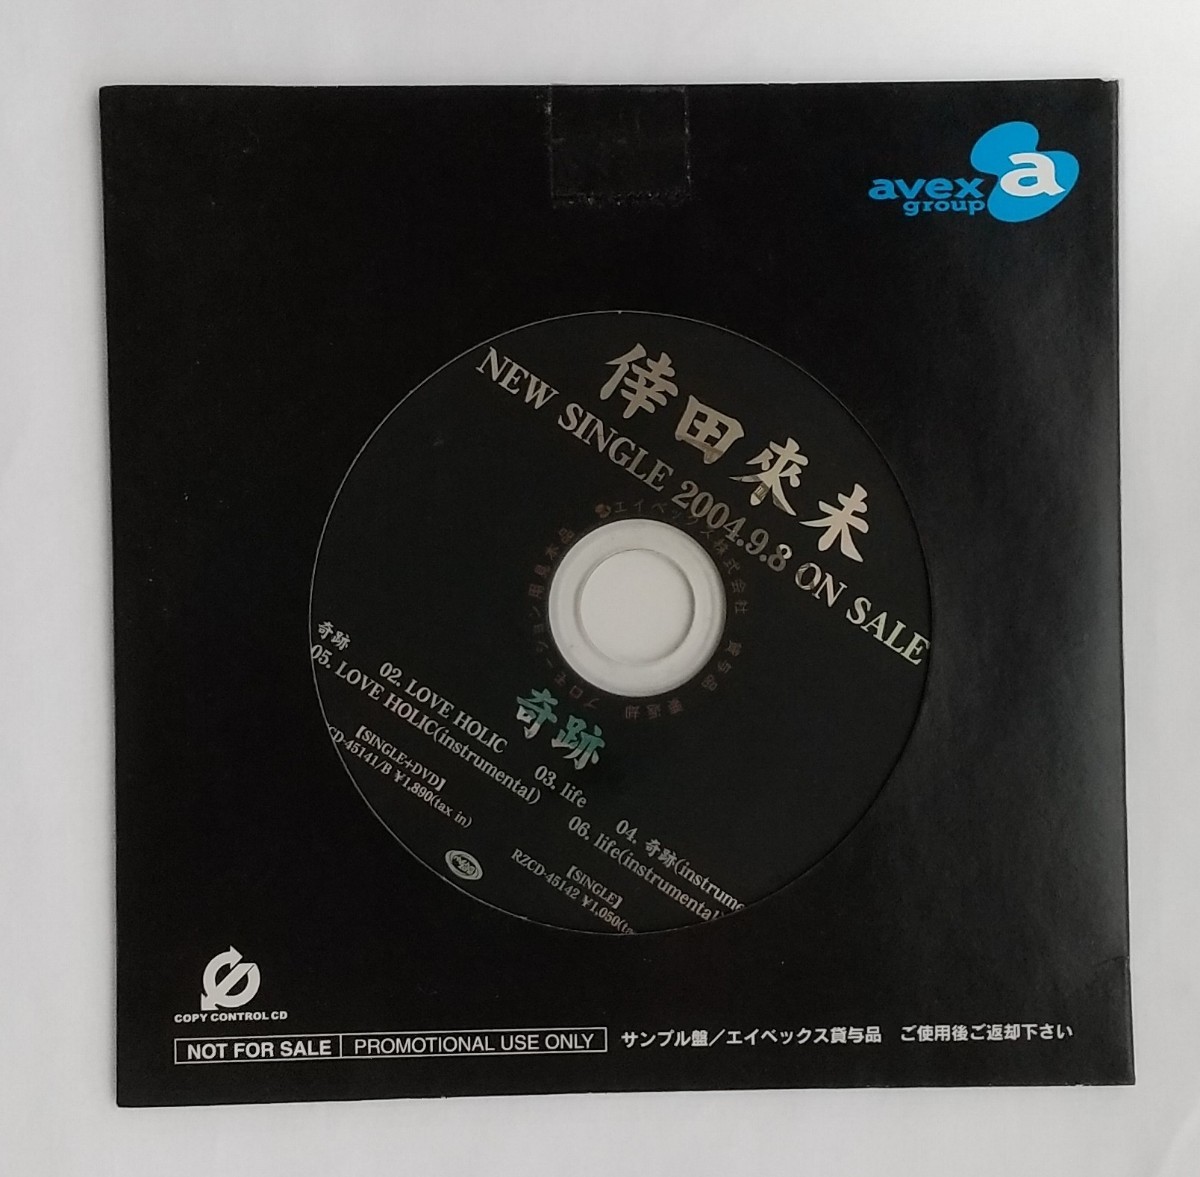 [ нераспечатанный *CD] Koda Kumi промо чудо образец образец запись 